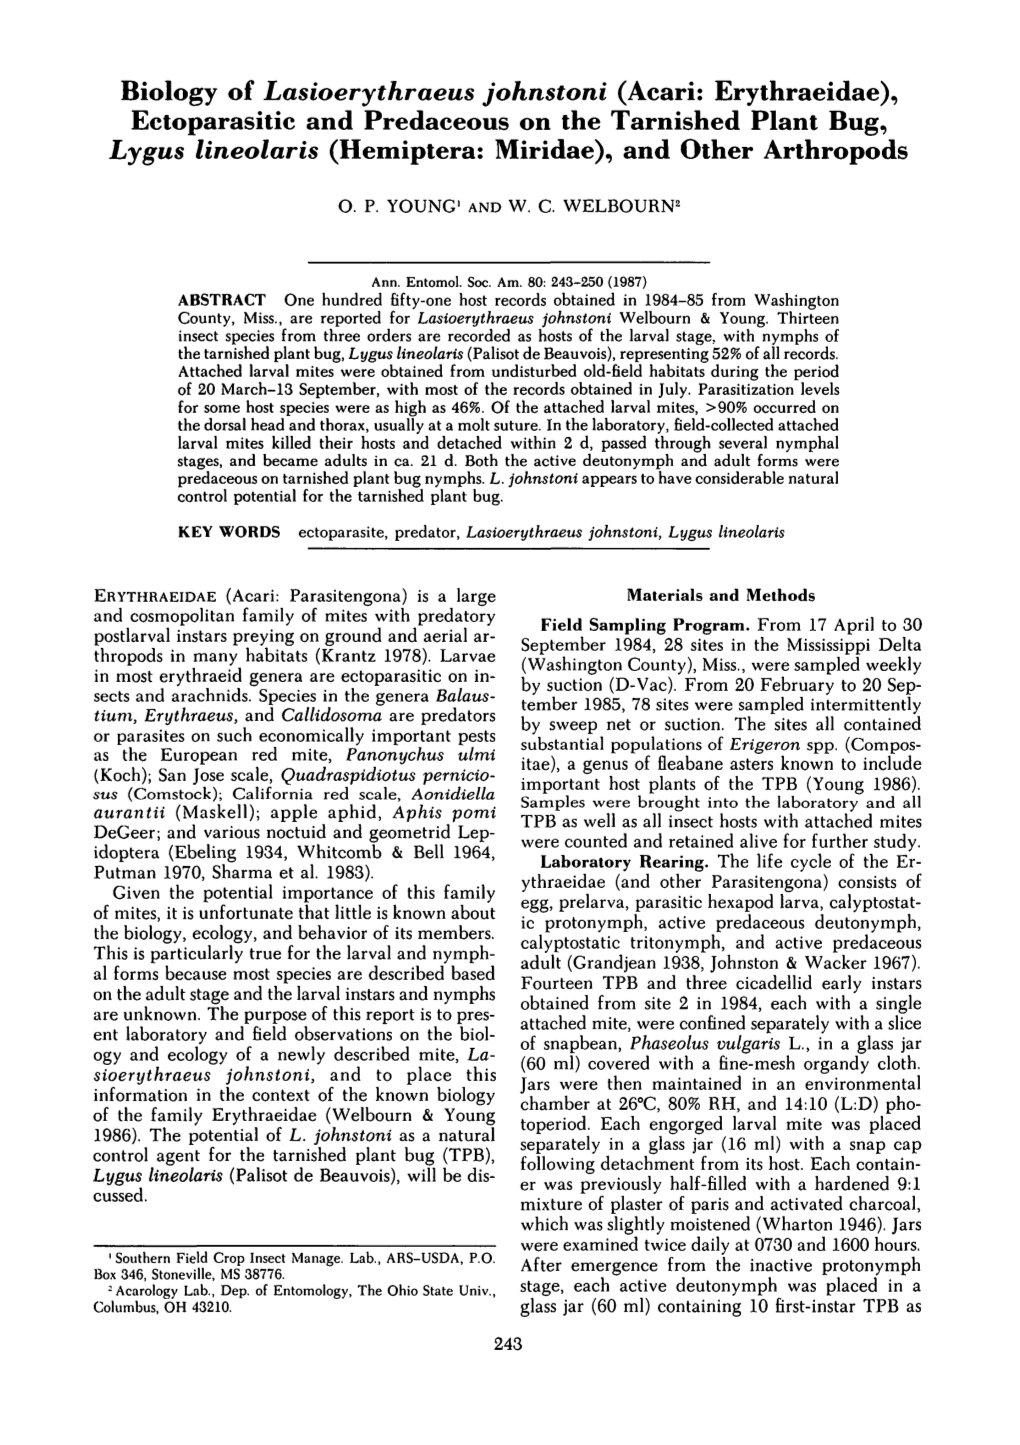 Biology of Lasioerythraeus Johnstoni (Acari: Erythraeidae)